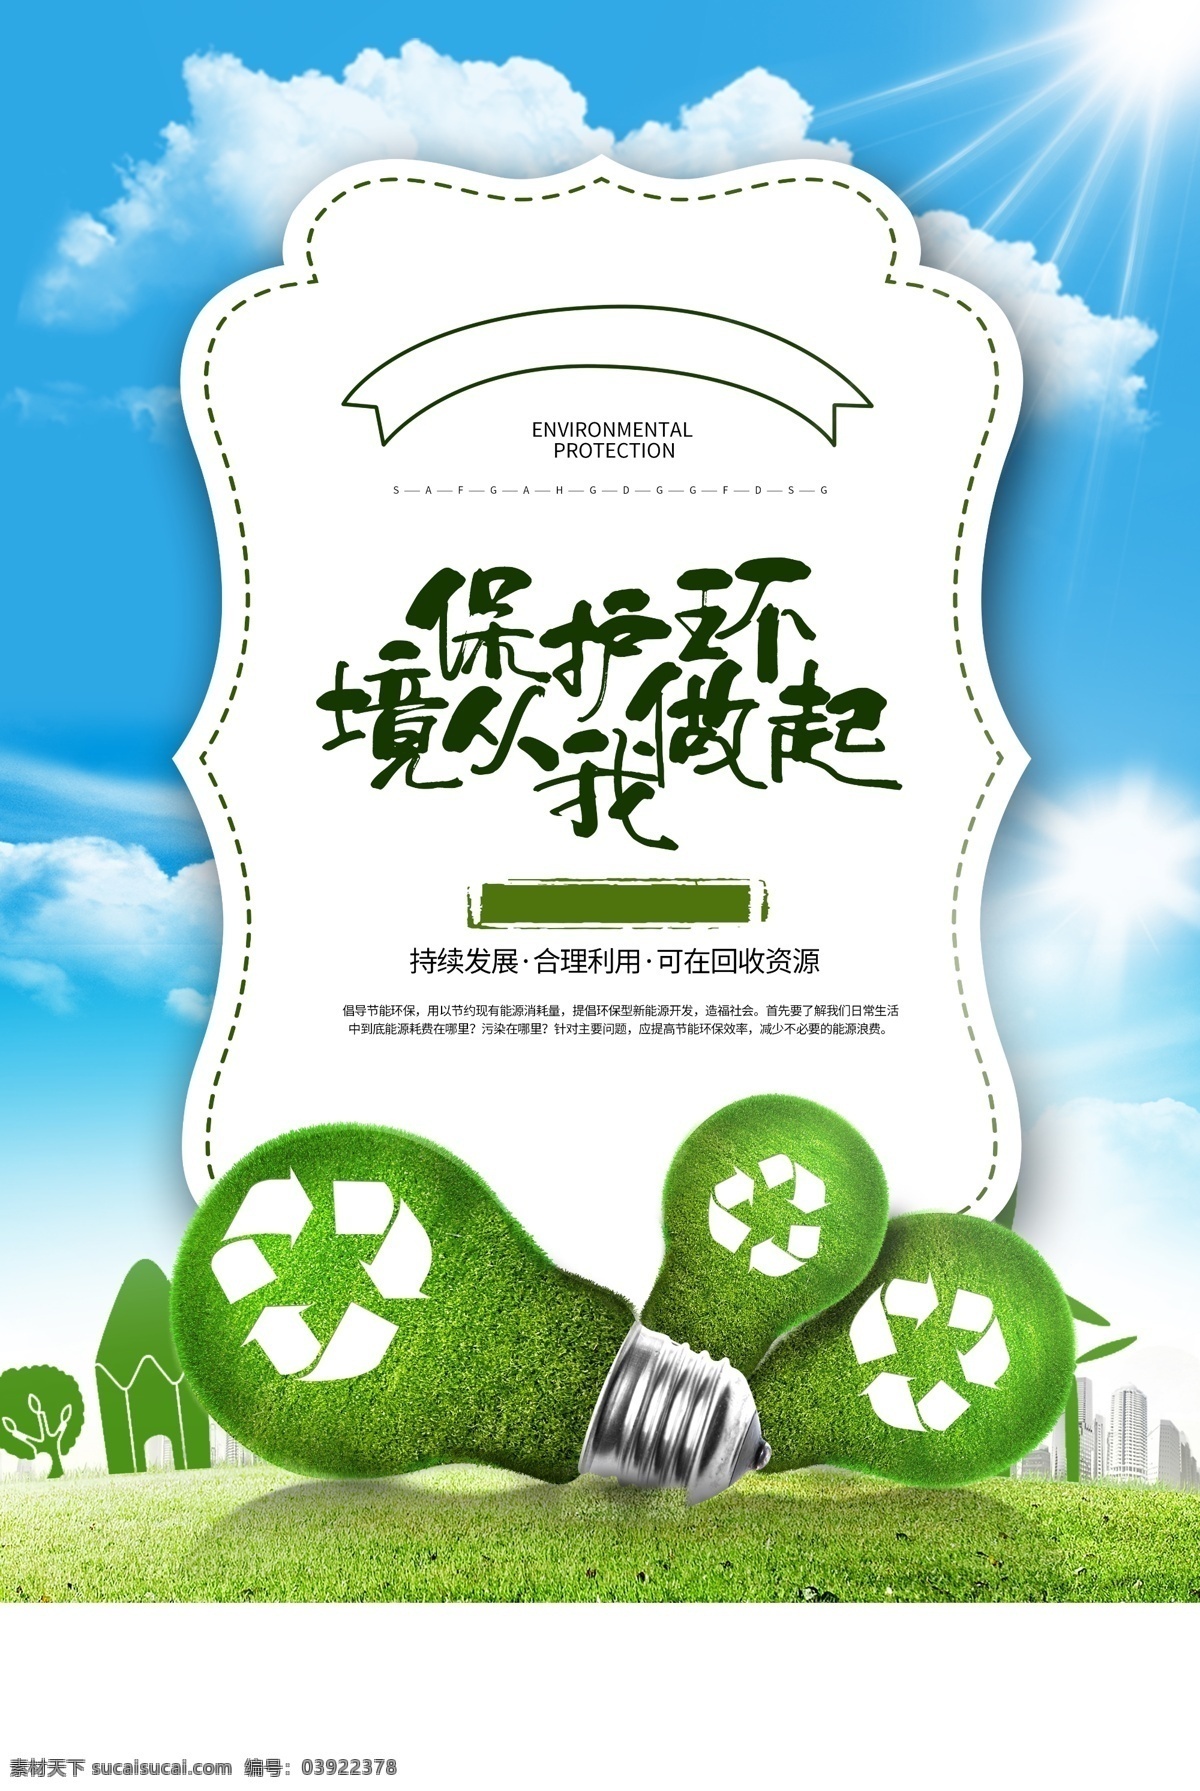 绿色环保 公益活动 宣传海报 素材图片 公益 活动 宣传 海报 社会